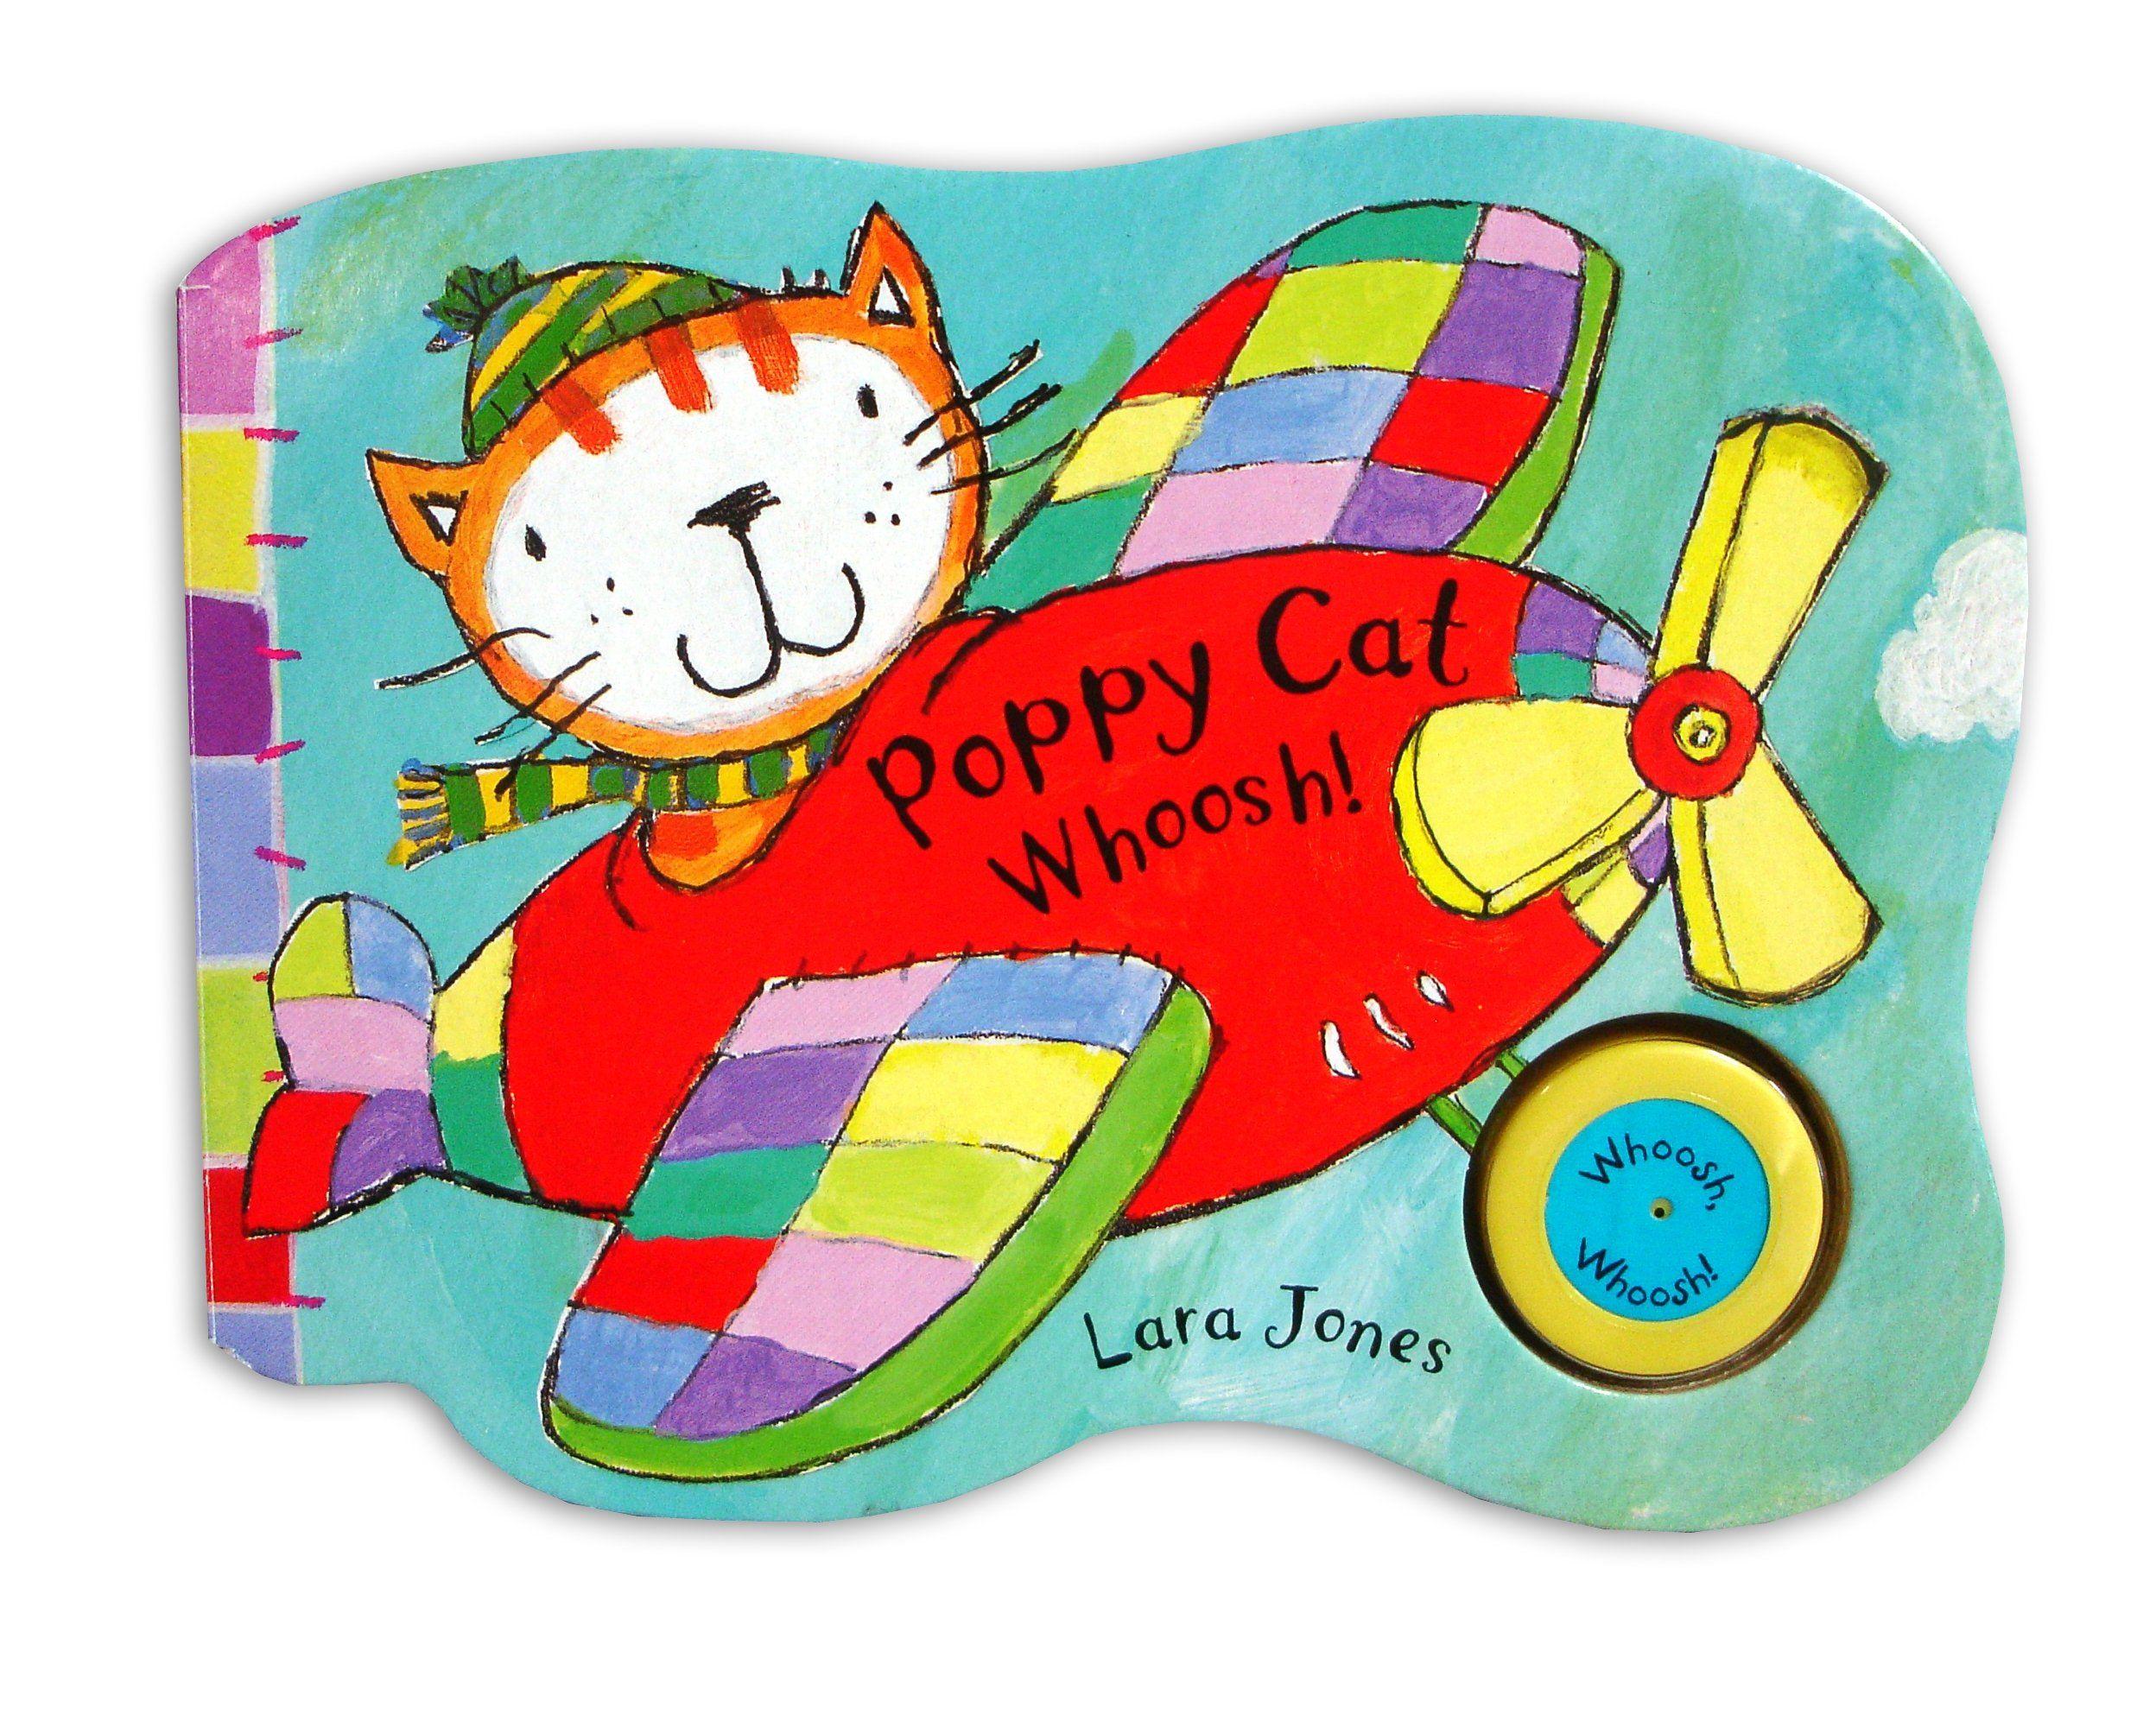 Poppy Cat Logo - Poppy Cat Noisy Books: Poppy Cat Whoosh!: Amazon.co.uk: Lara Jones ...